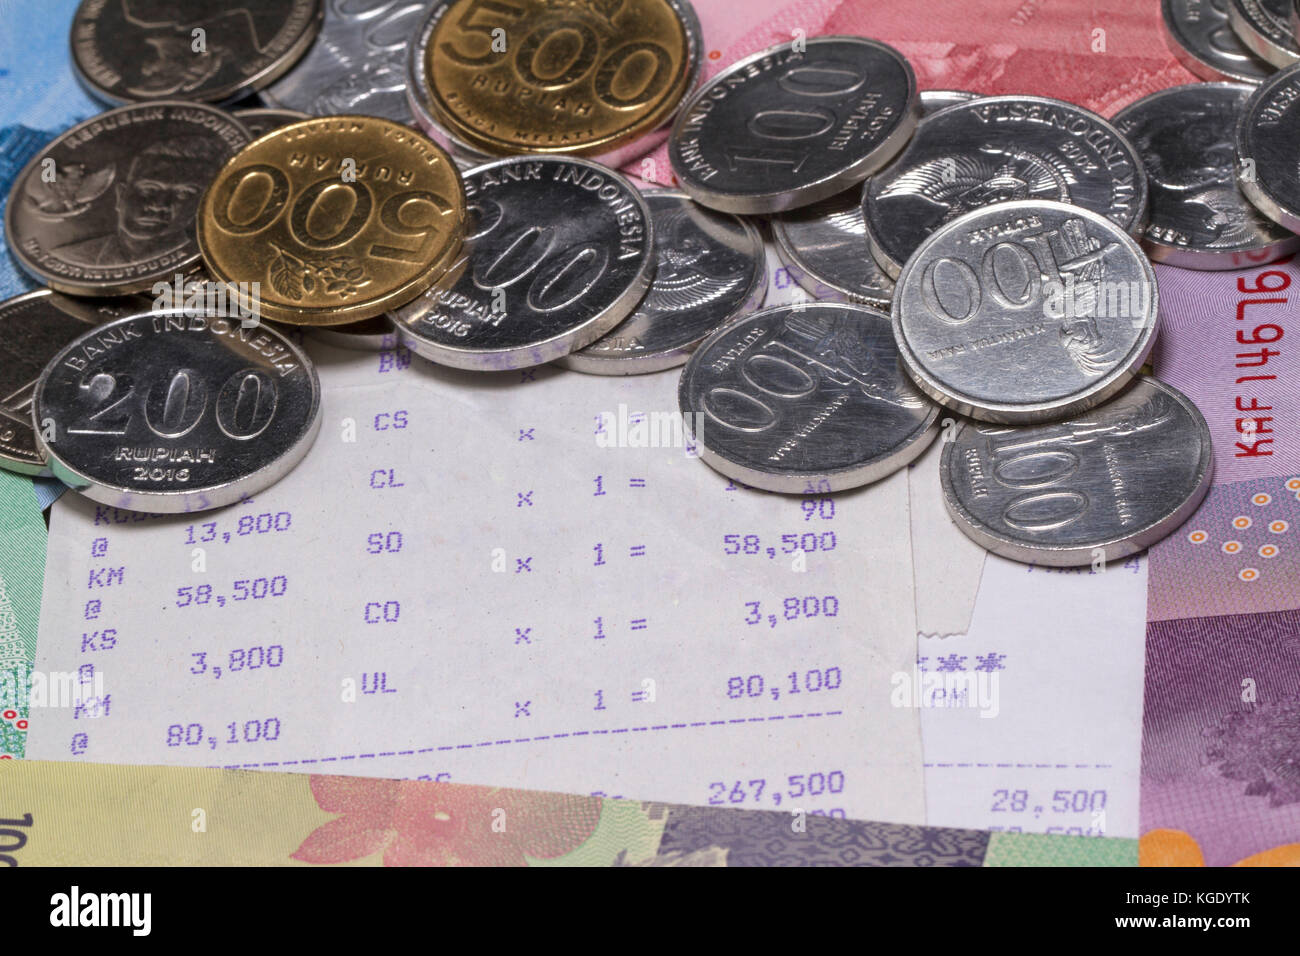 Ausgabengeld und Zahlung sind mit Münzen, Banknoten und Belegpapier dargestellt Stockfoto